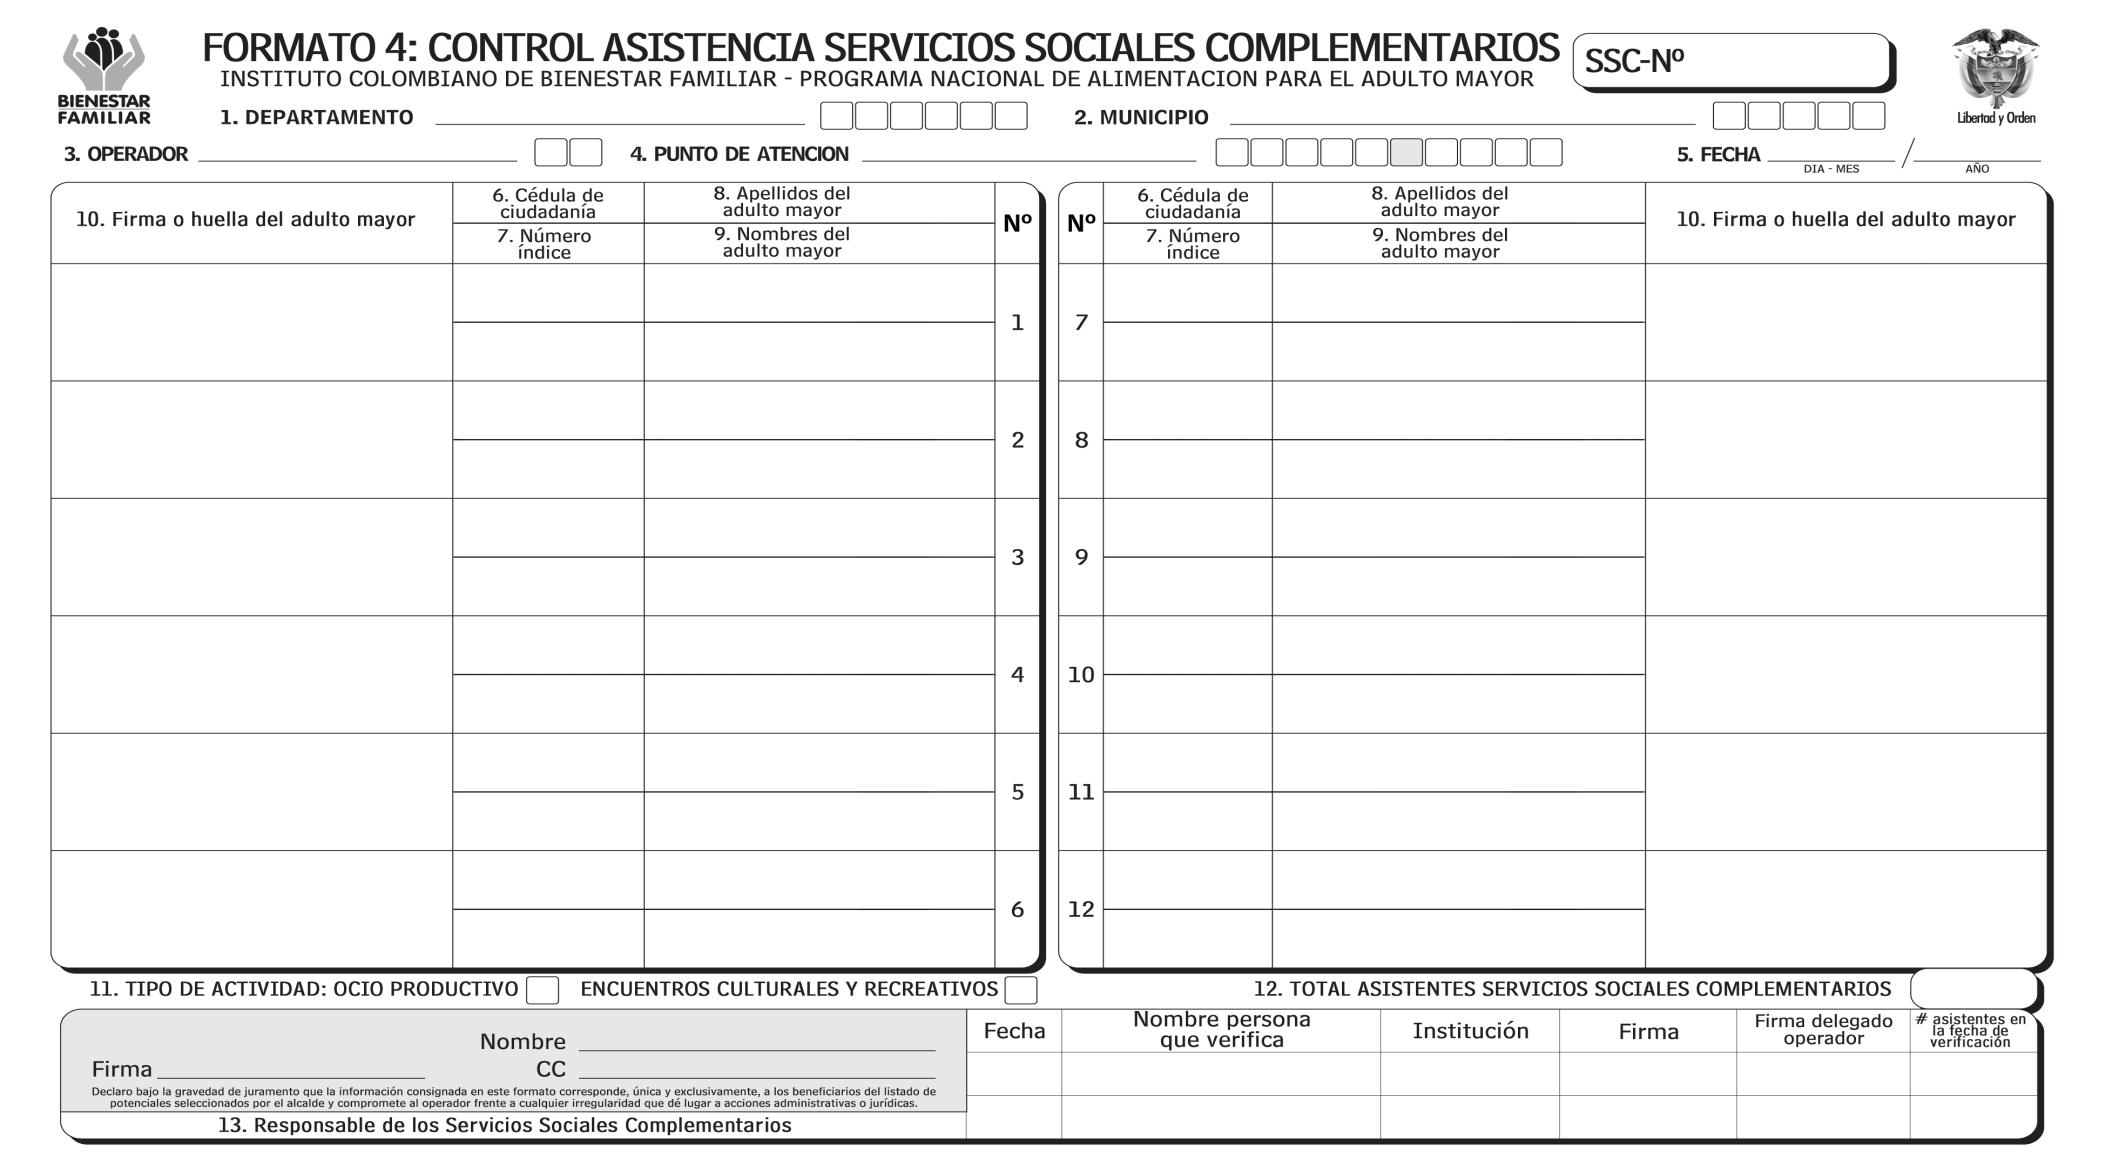 21. FORMATO 4: CONTROL ASISTENCIA SERVICIOS SOCIALES